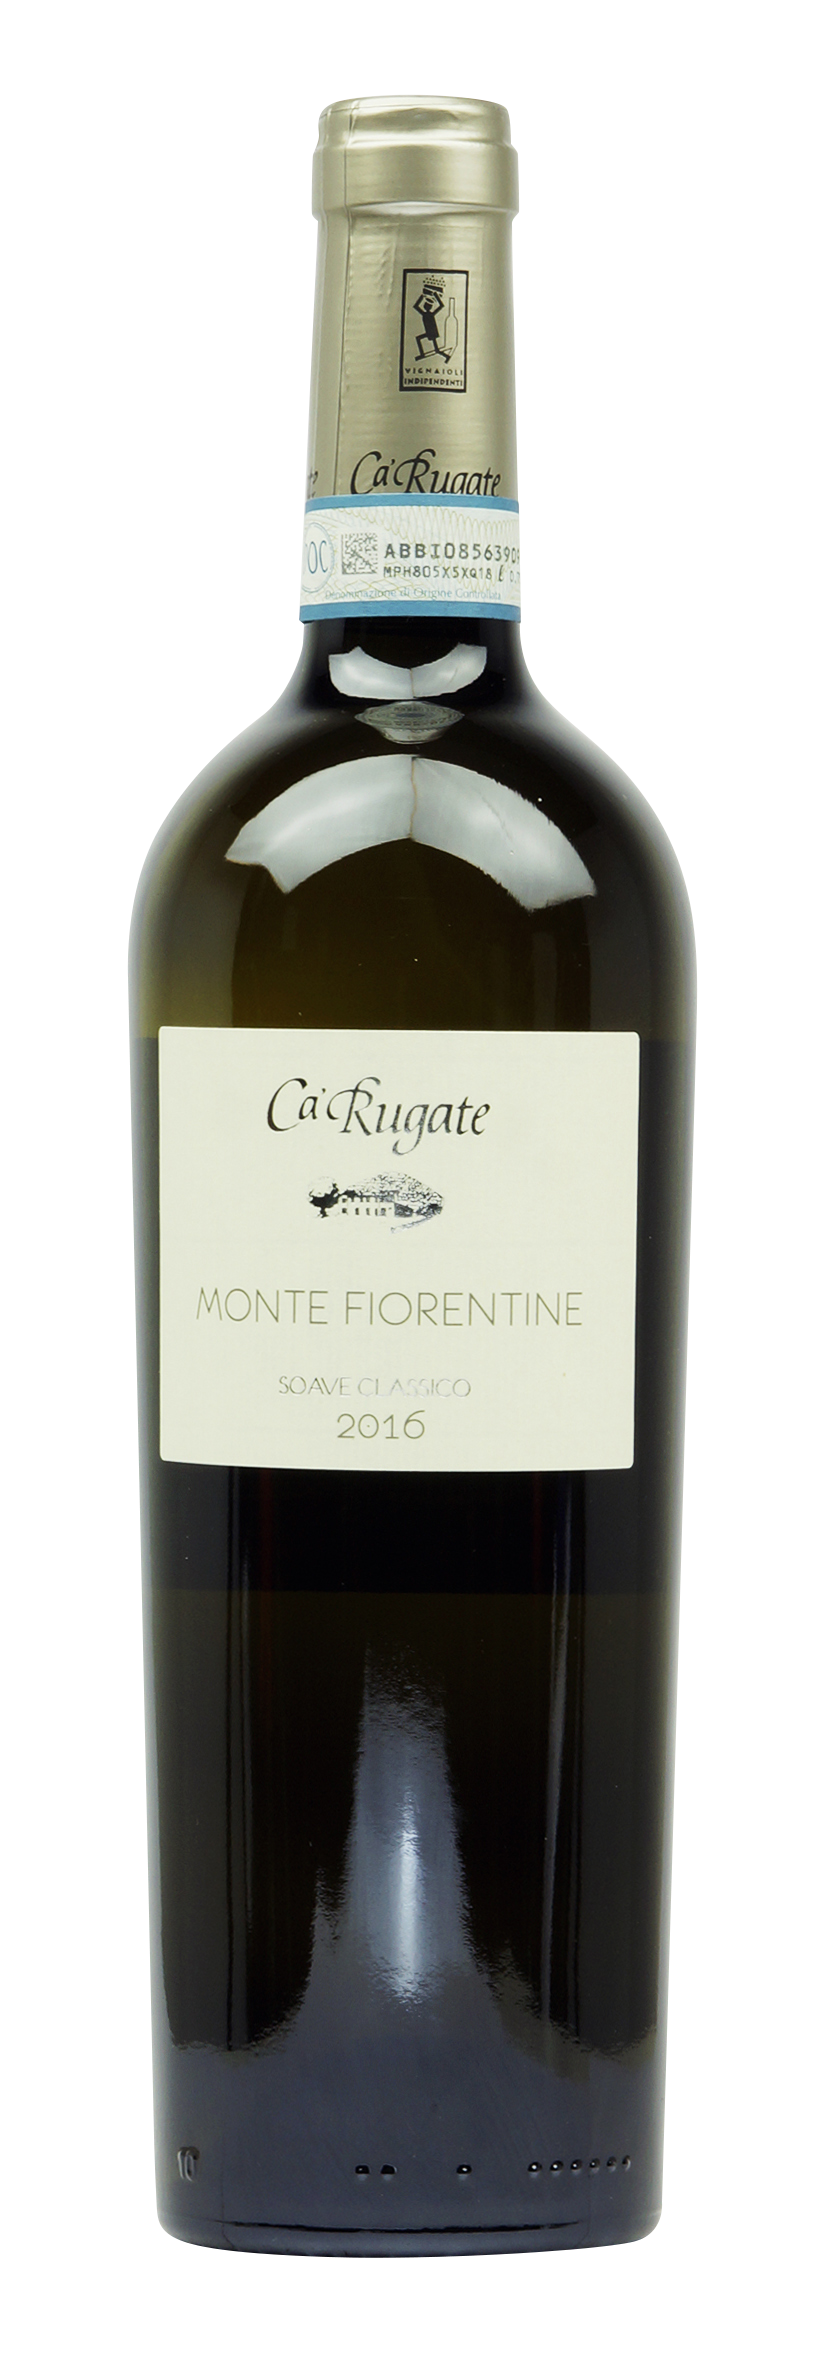 Soave DOC Monte Fiorentine 2016